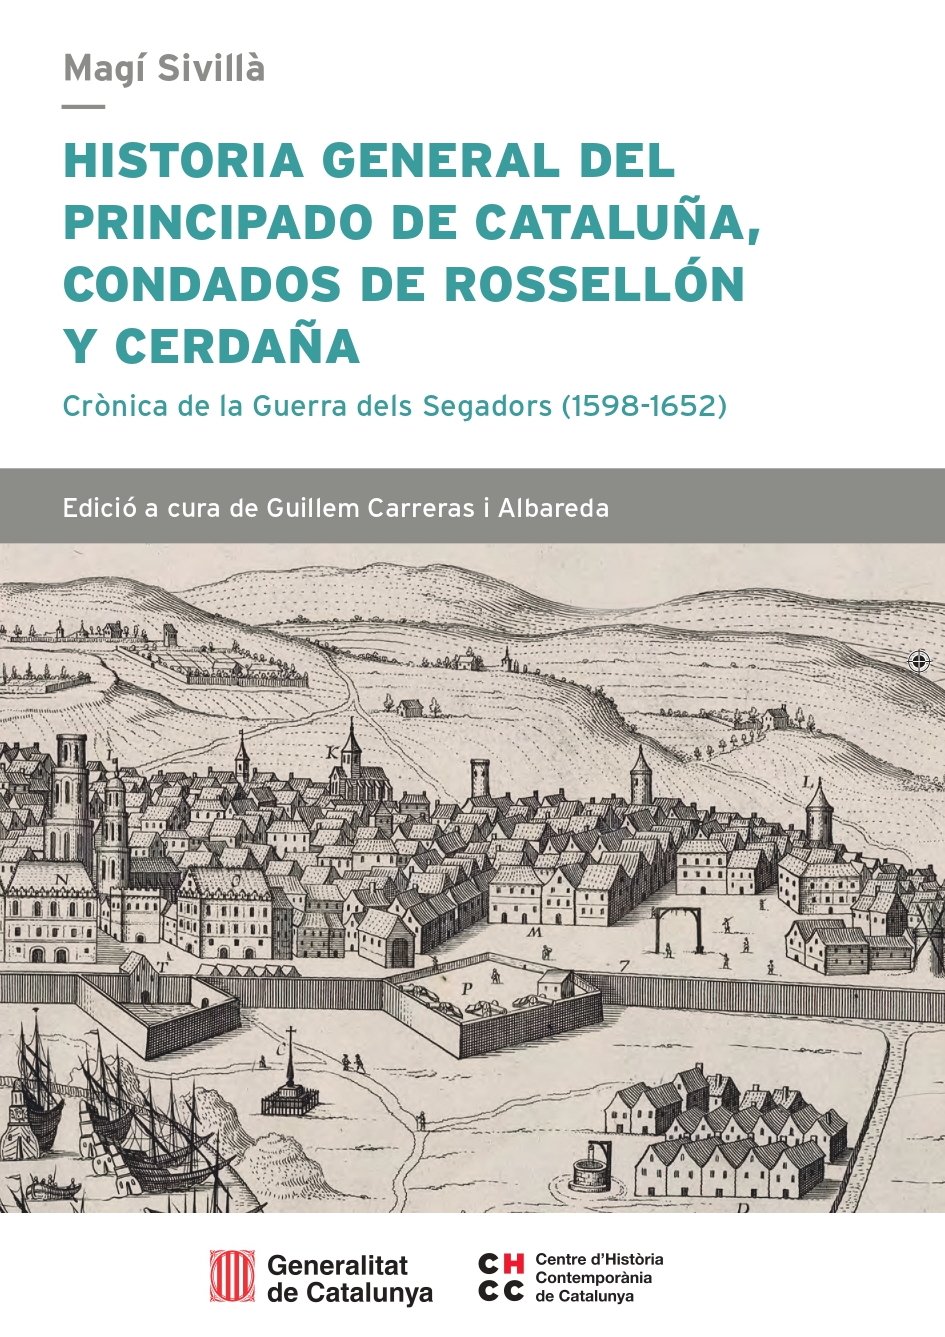 Magí Sivillà, 'Historia general del Principado de Catalunya'. CHCC, 1257 p., 40 €.